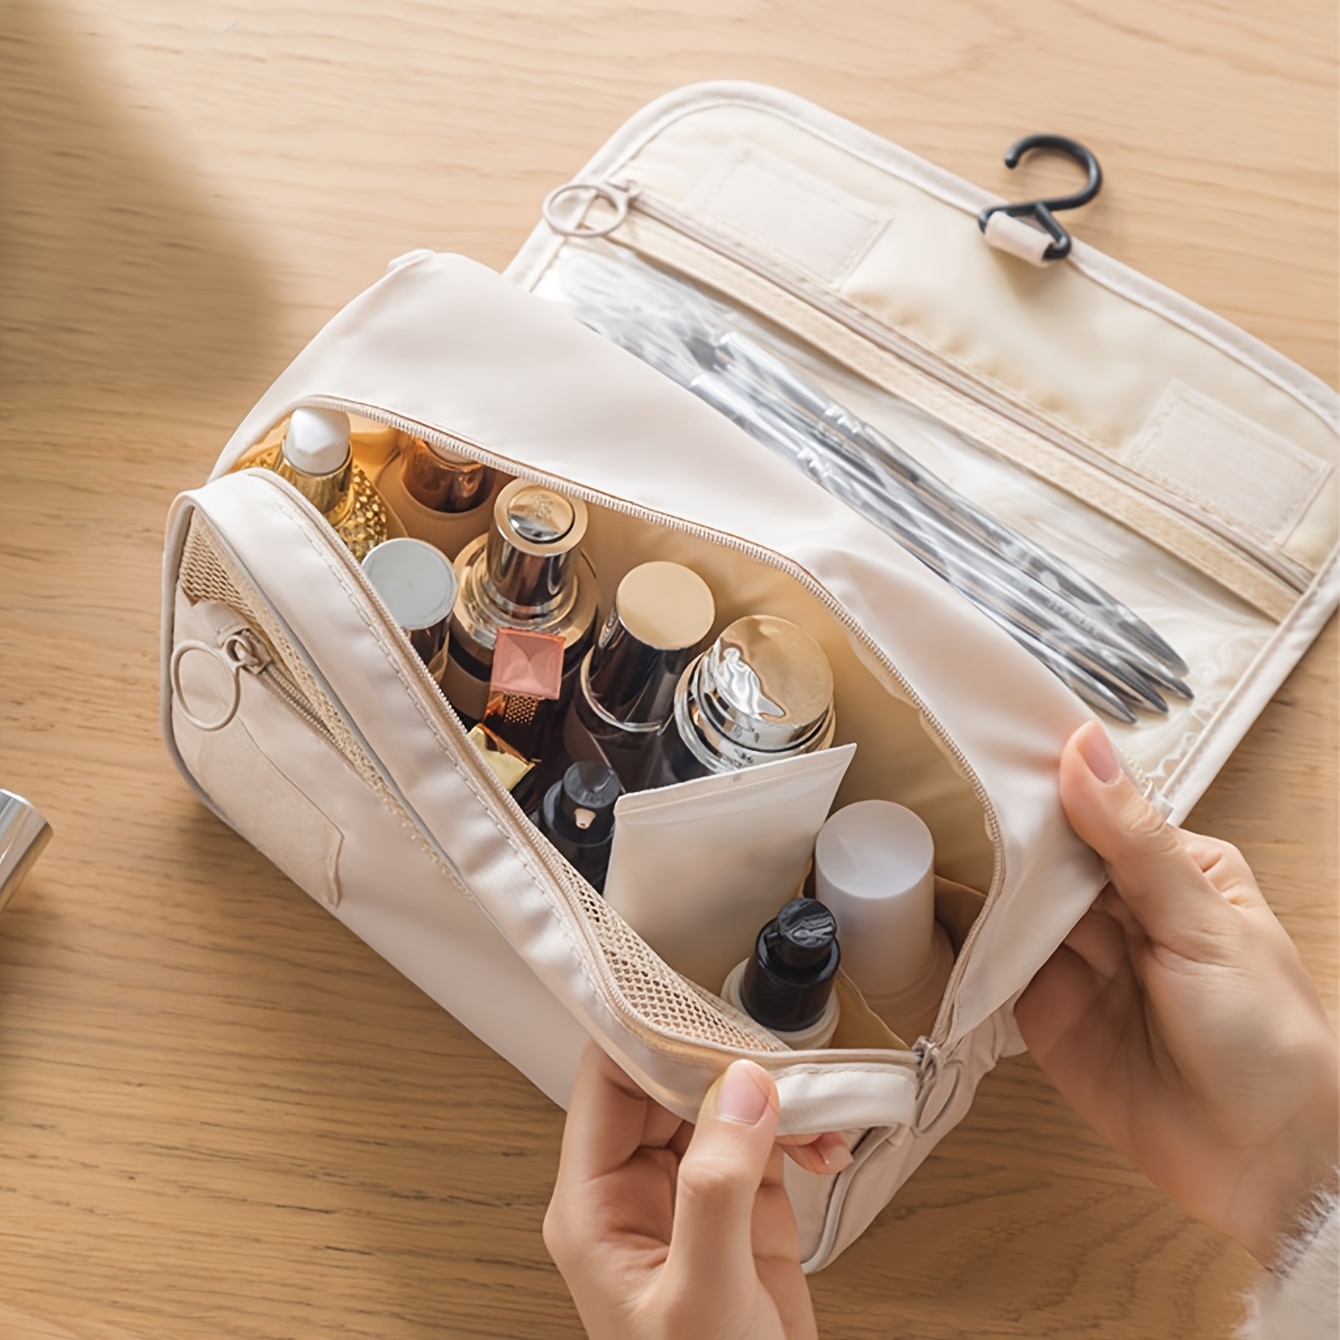 Korean Travel Makeup Bag For Women Cosmetic Storage Bag Portable